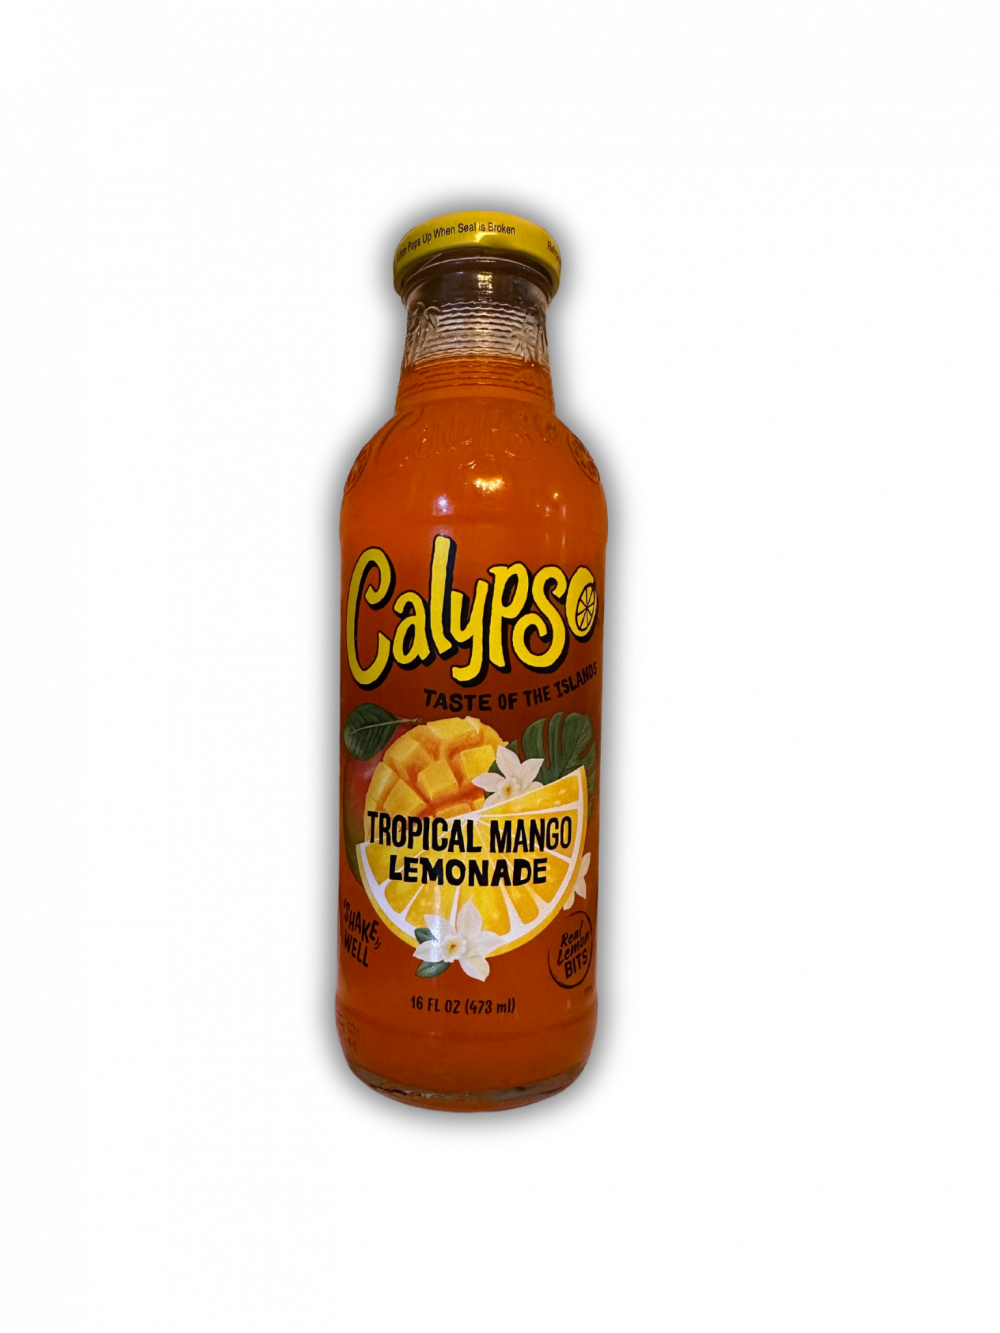 Entdecke die exotische Frische der Calypso Tropical Mango Lemonade aus den USA! Dieses erfrischende Getränk kombiniert den süßen Geschmack saftiger Mangos mit einer spritzigen Zitronenlimonade, die deine Sinne belebt. Jeder Schluck entführt dich in die tropischen Paradiese und lässt dich die Sonne auf der Haut spüren. Die Calypso Tropical Mango Lemonade ist der ideale Durstlöscher für heiße Tage und verspricht ein erfrischendes Geschmackserlebnis. Bestelle noch heute und genieße die fruchtige Exotik dieser köstlichen Limonade! […] - Breddas Hemp & Sweets Company Wuppertal